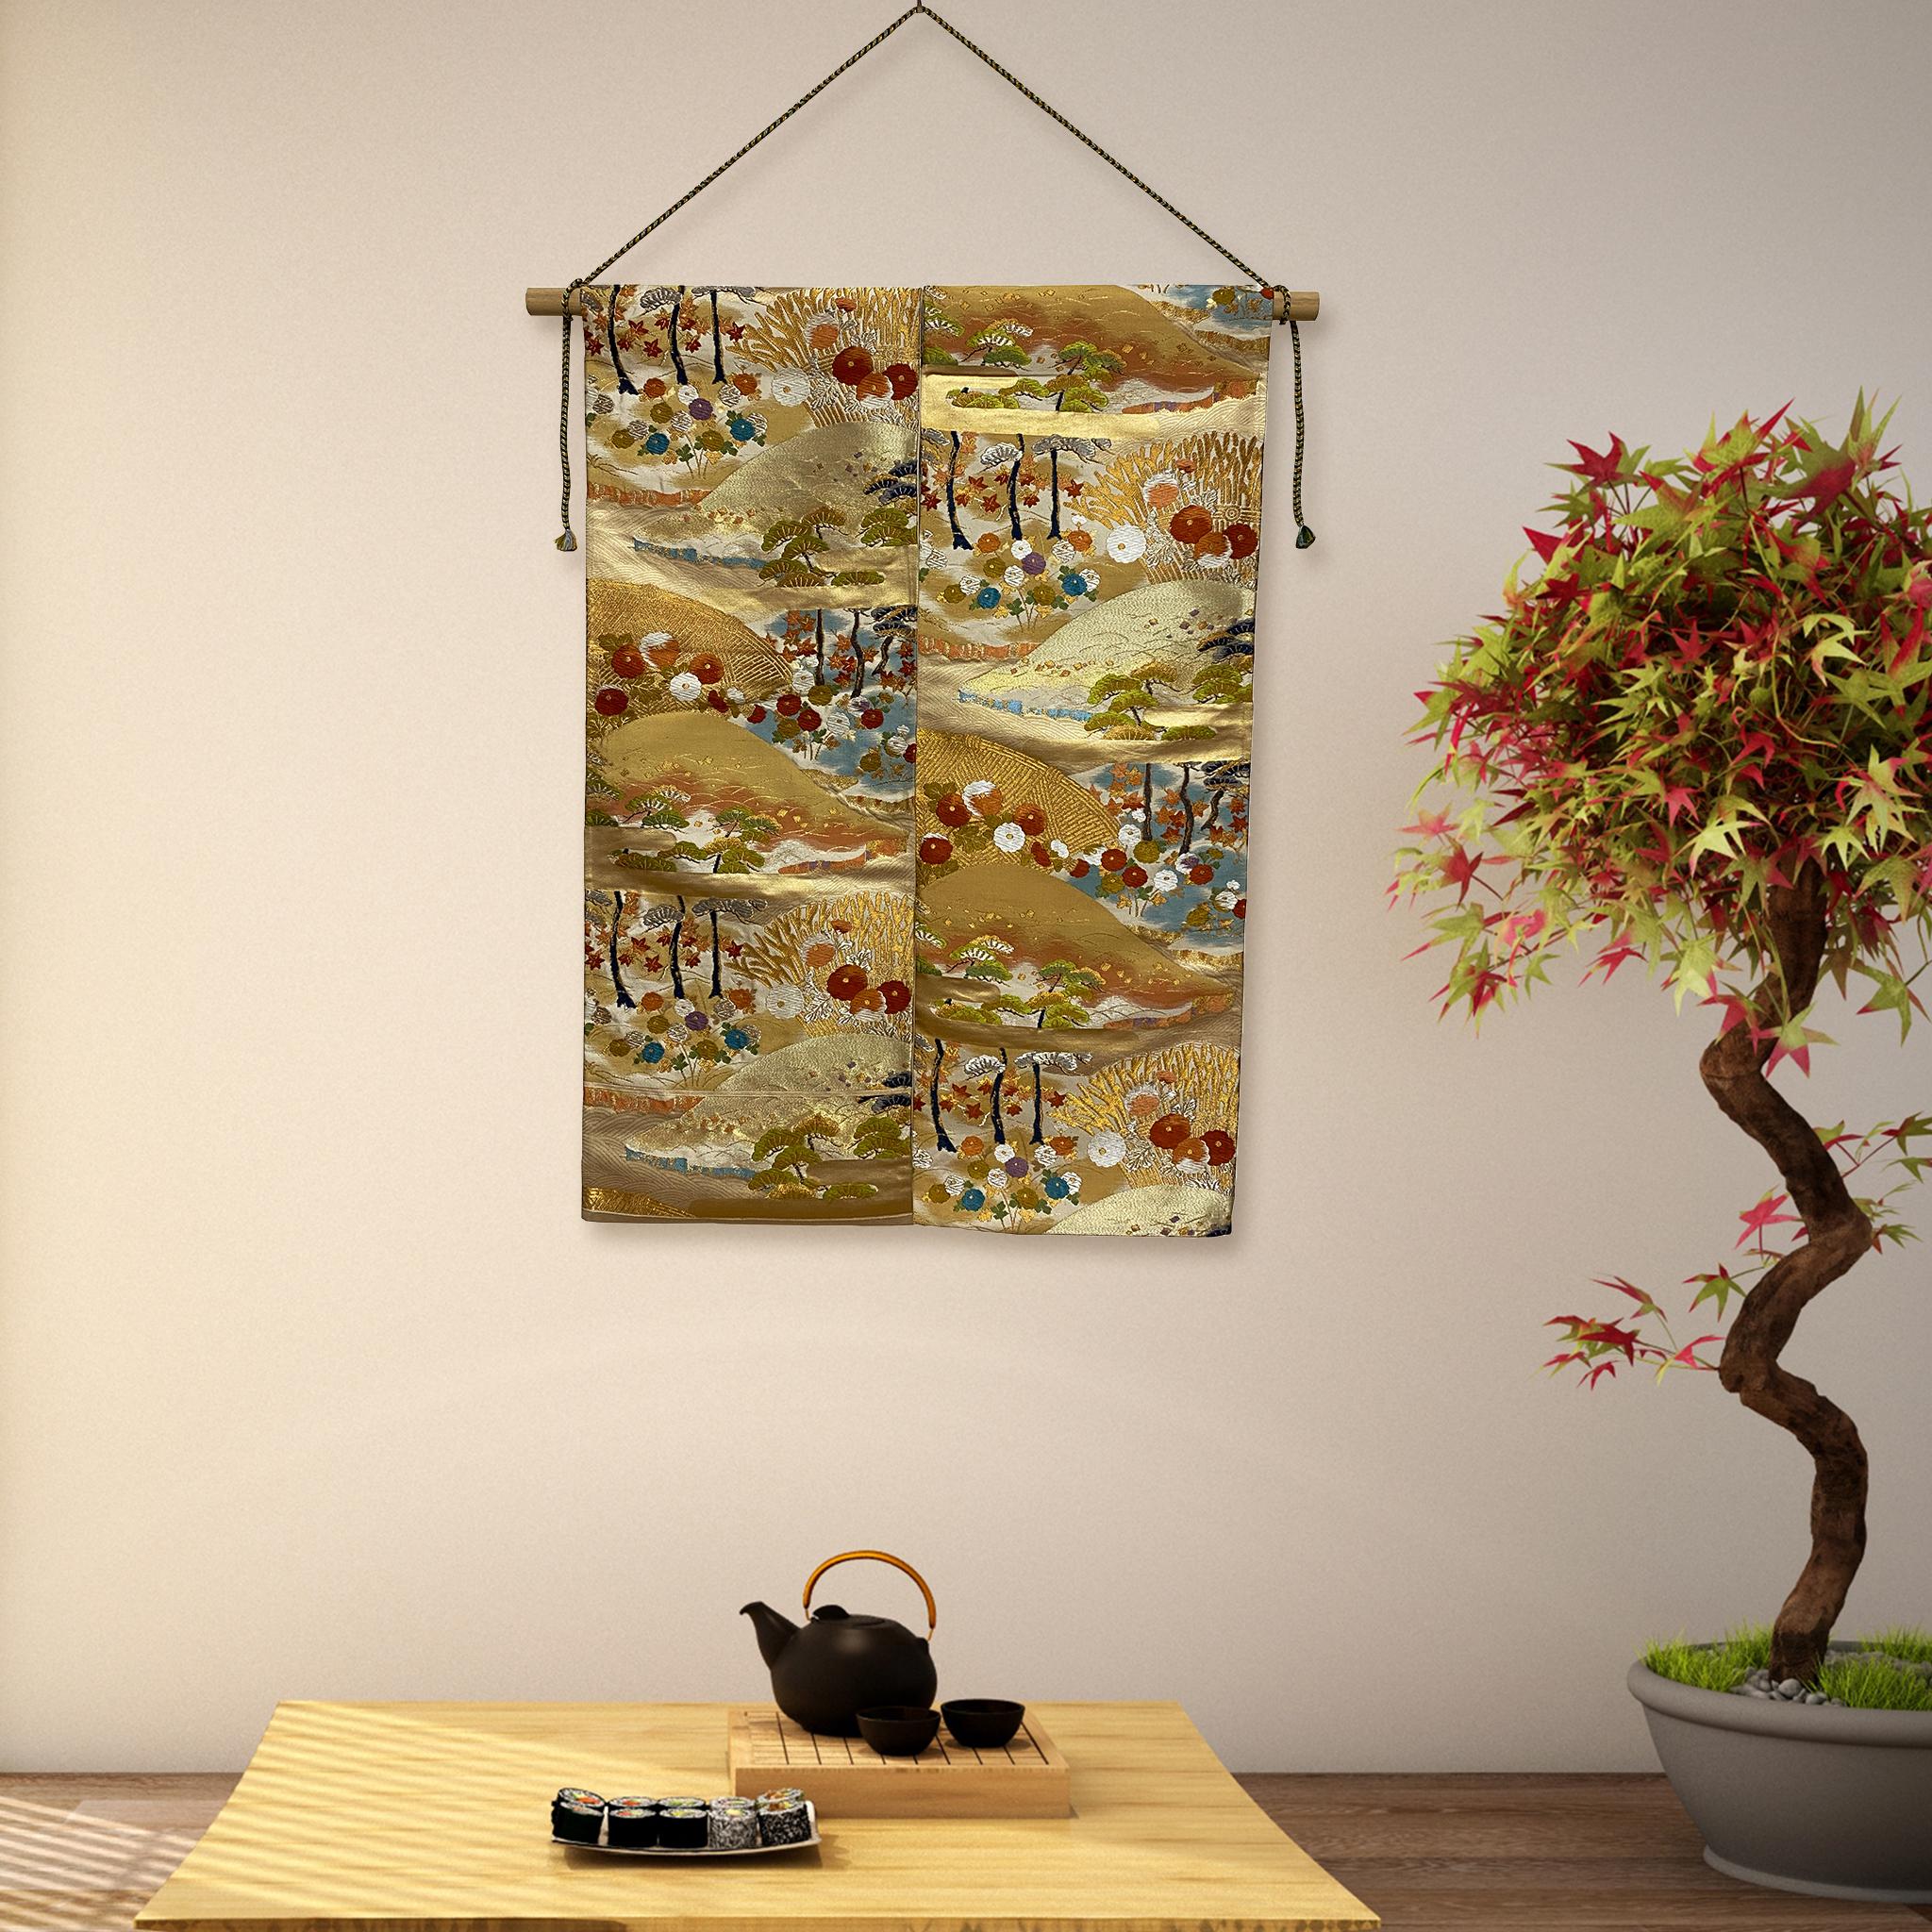 Garten am Meer von Kimono-Couture

*Japanische Kimono-Kunst
*Handgefertigt von Kimono-Couture
*Einzigartige japanische Kunst

Dieses Werk ist ein Wandteppich aus hochwertigen Kimono-Obi, der von erfahrenen japanischen Handwerkern hergestellt und als